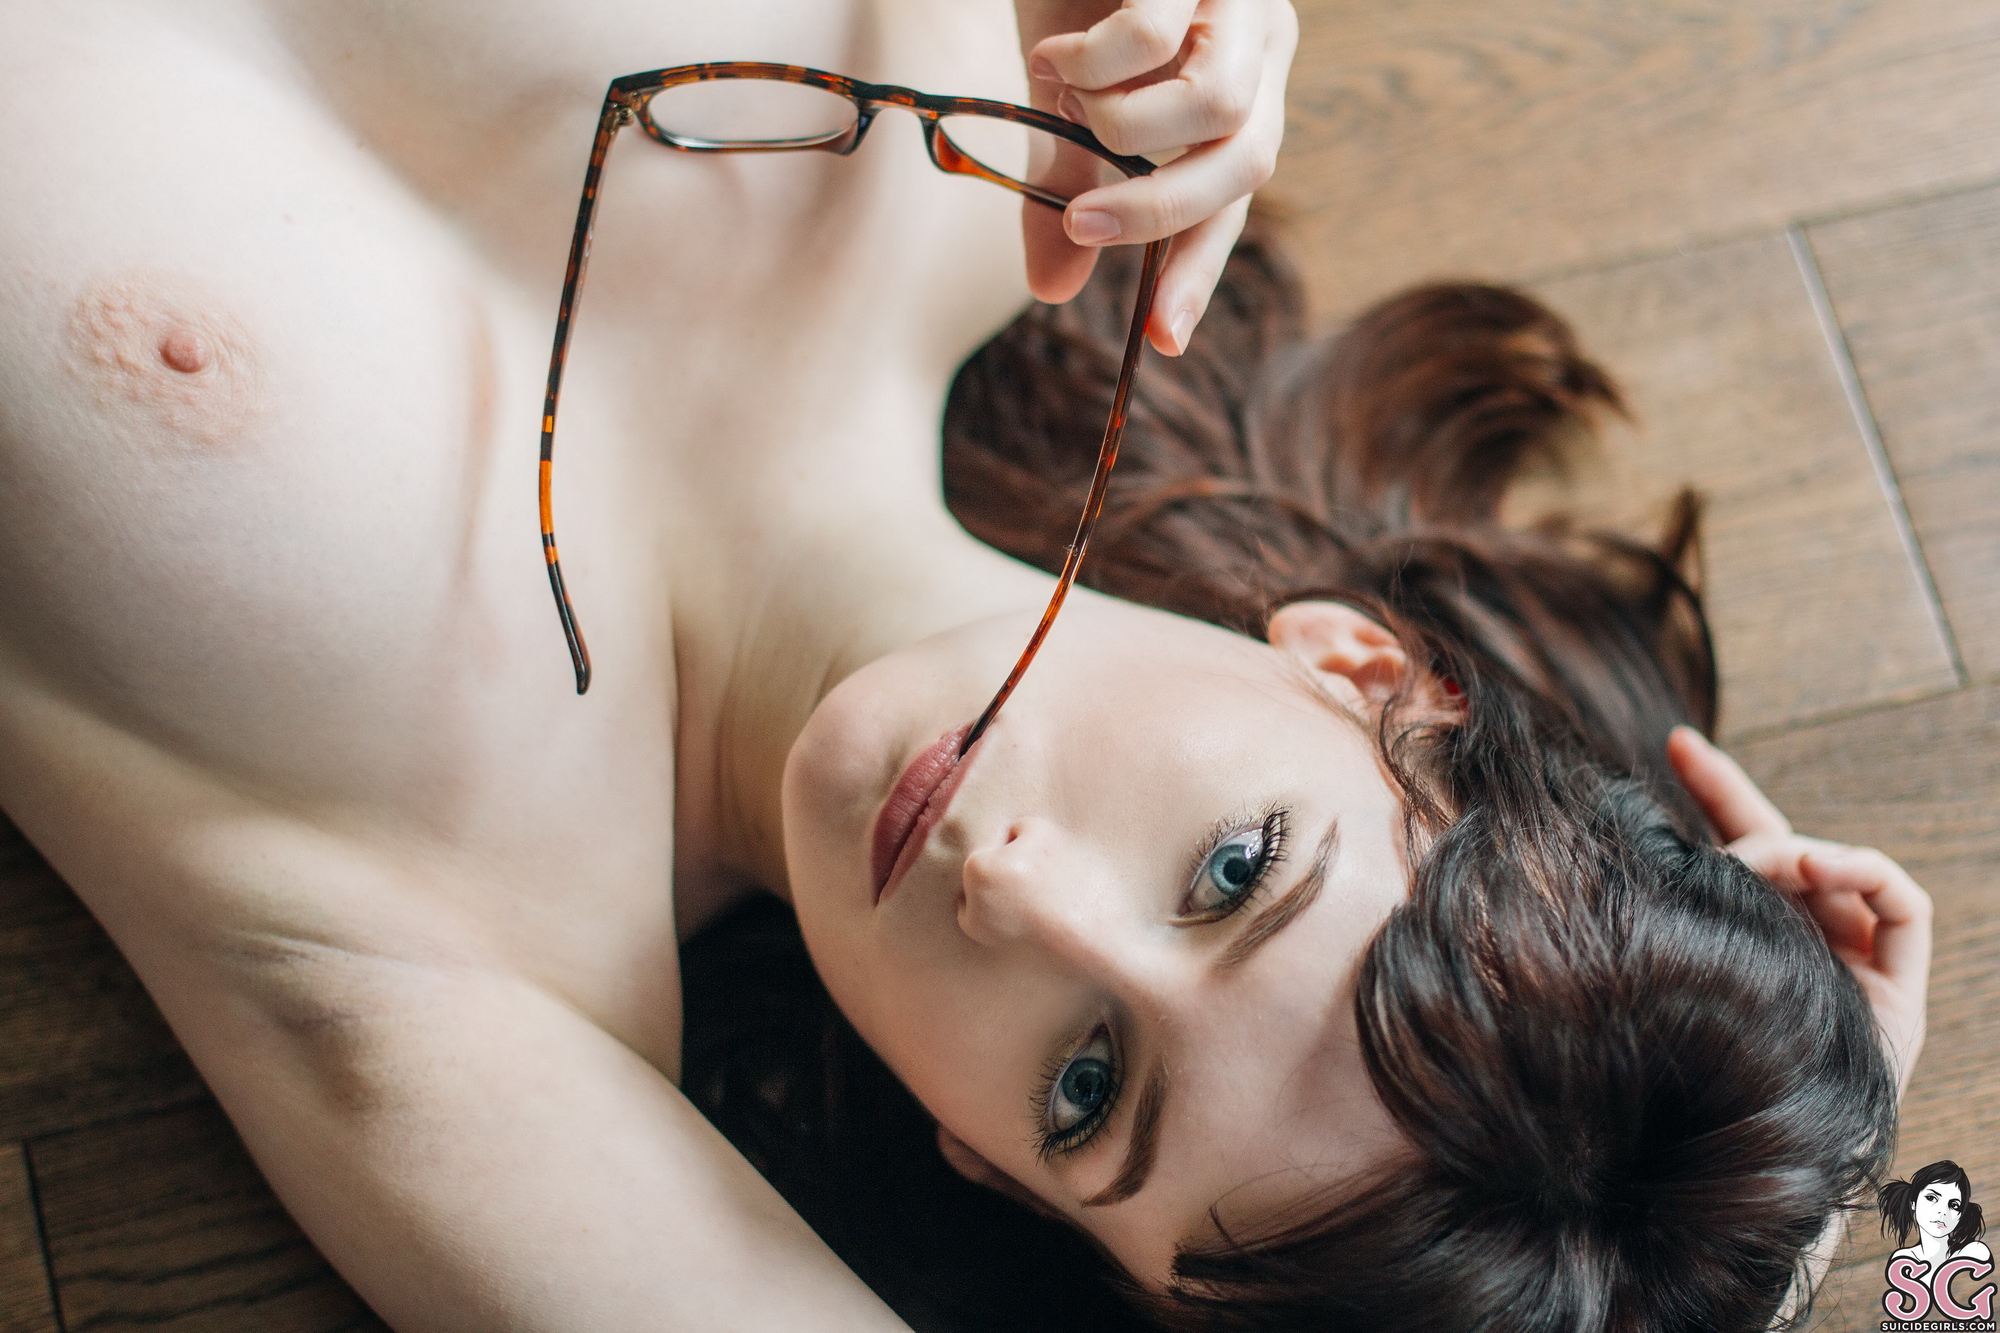 jessica-lou-boobs-glasses-bodysuit-suicidegirls-42